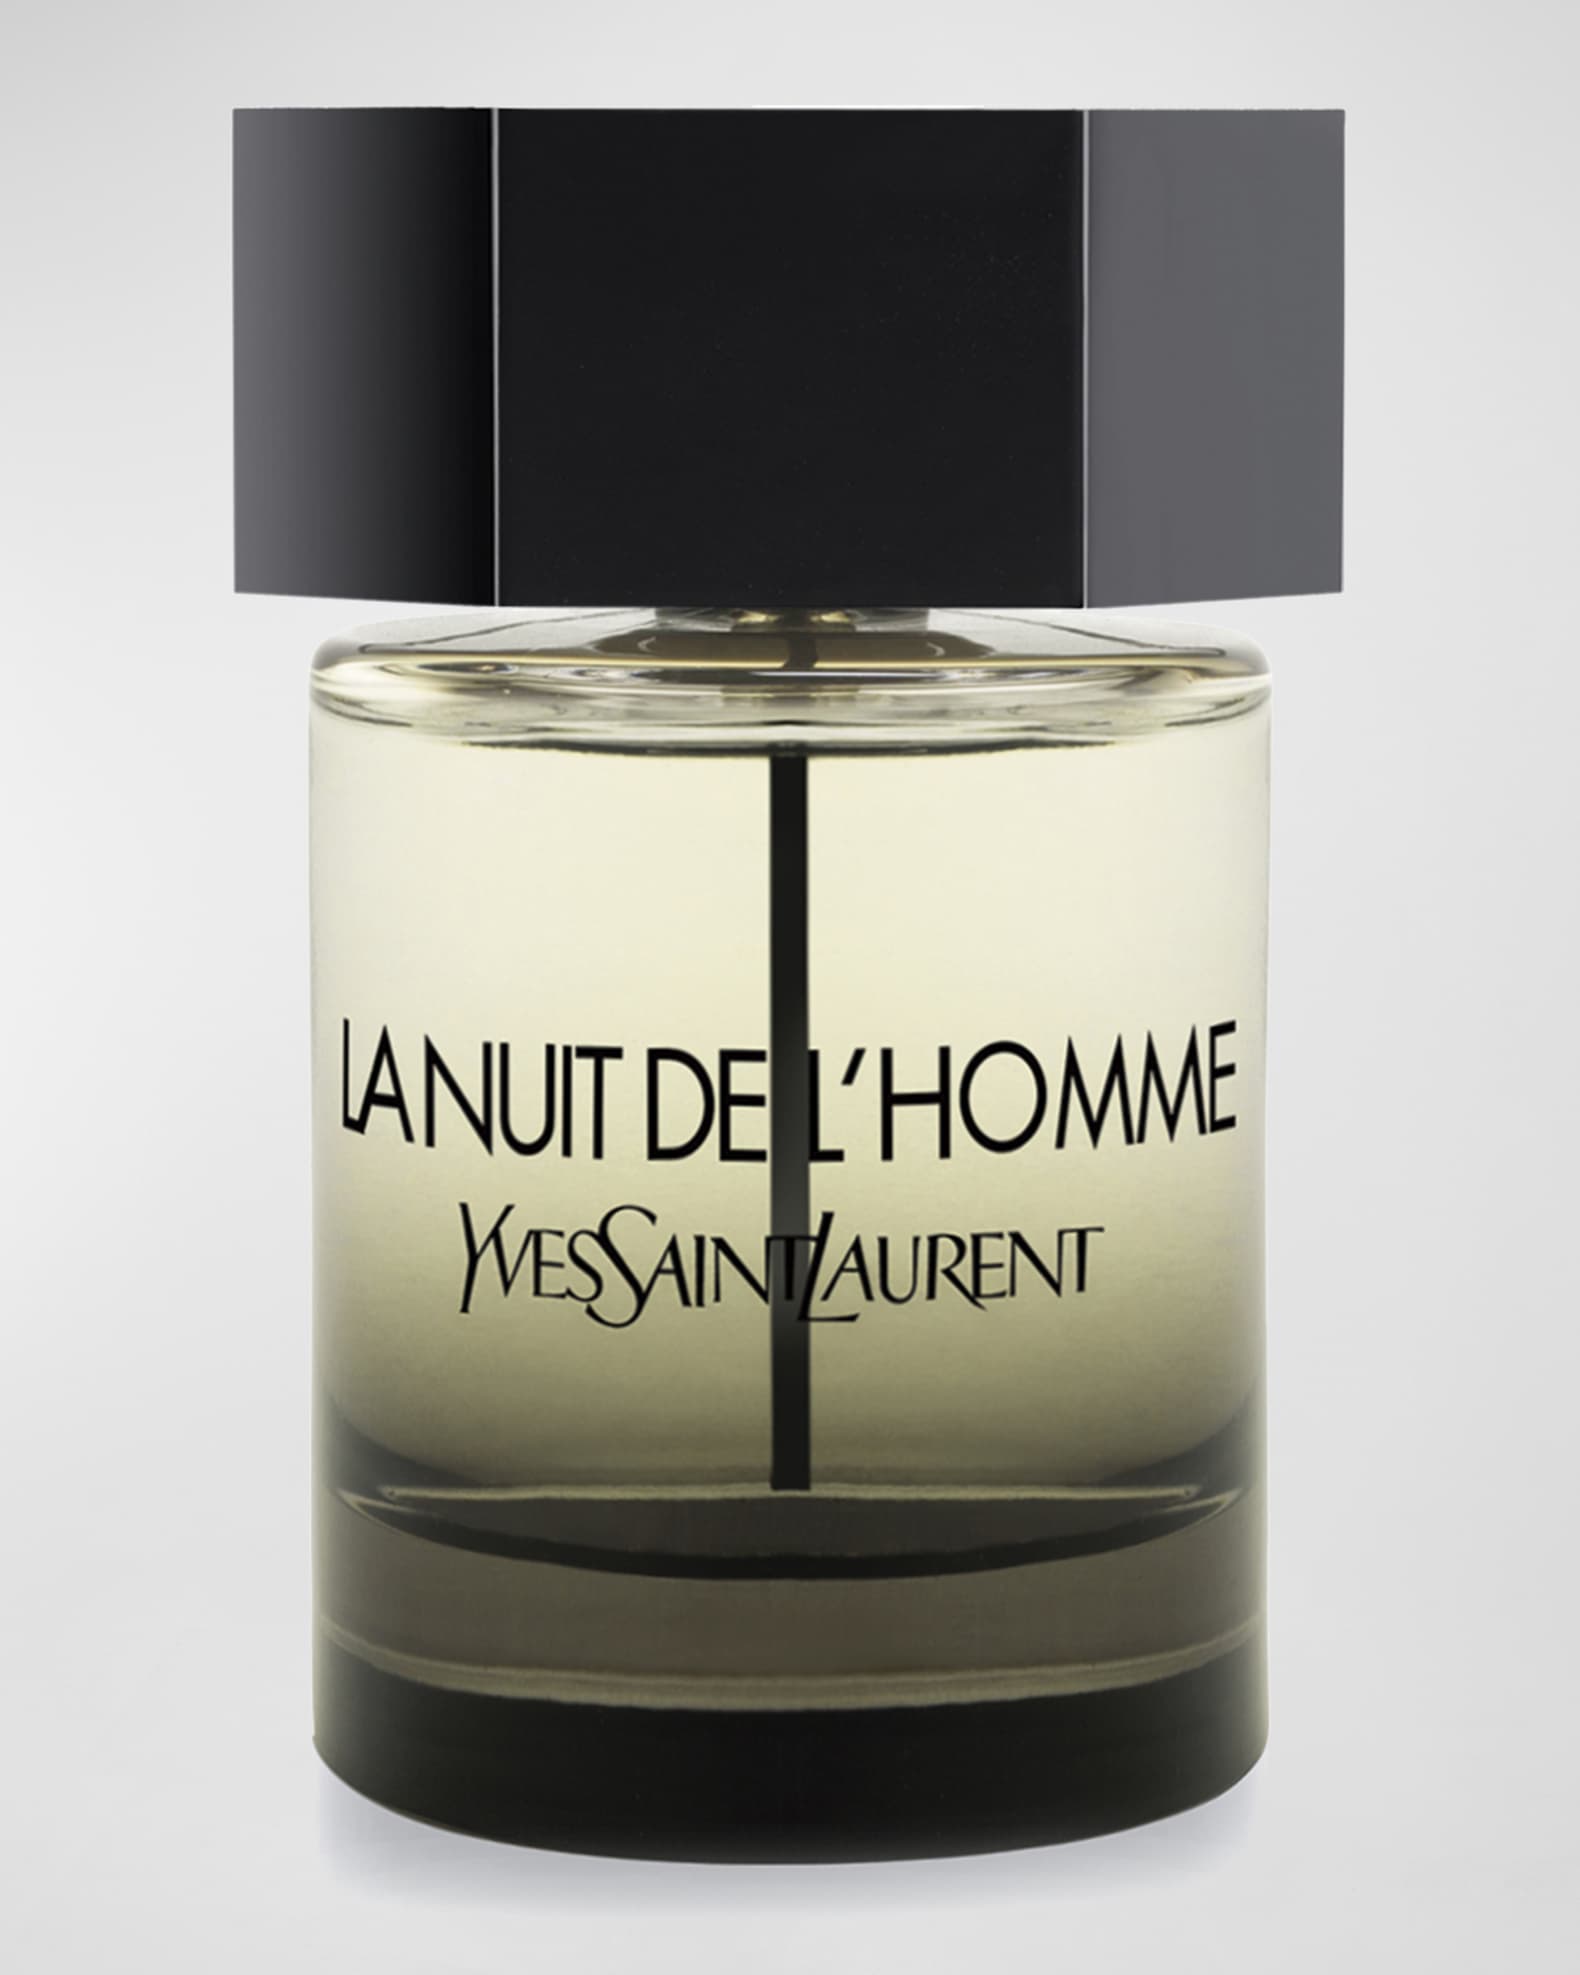 YSL La Collection Rive Gauche Pour Homme EDT – The Fragrance